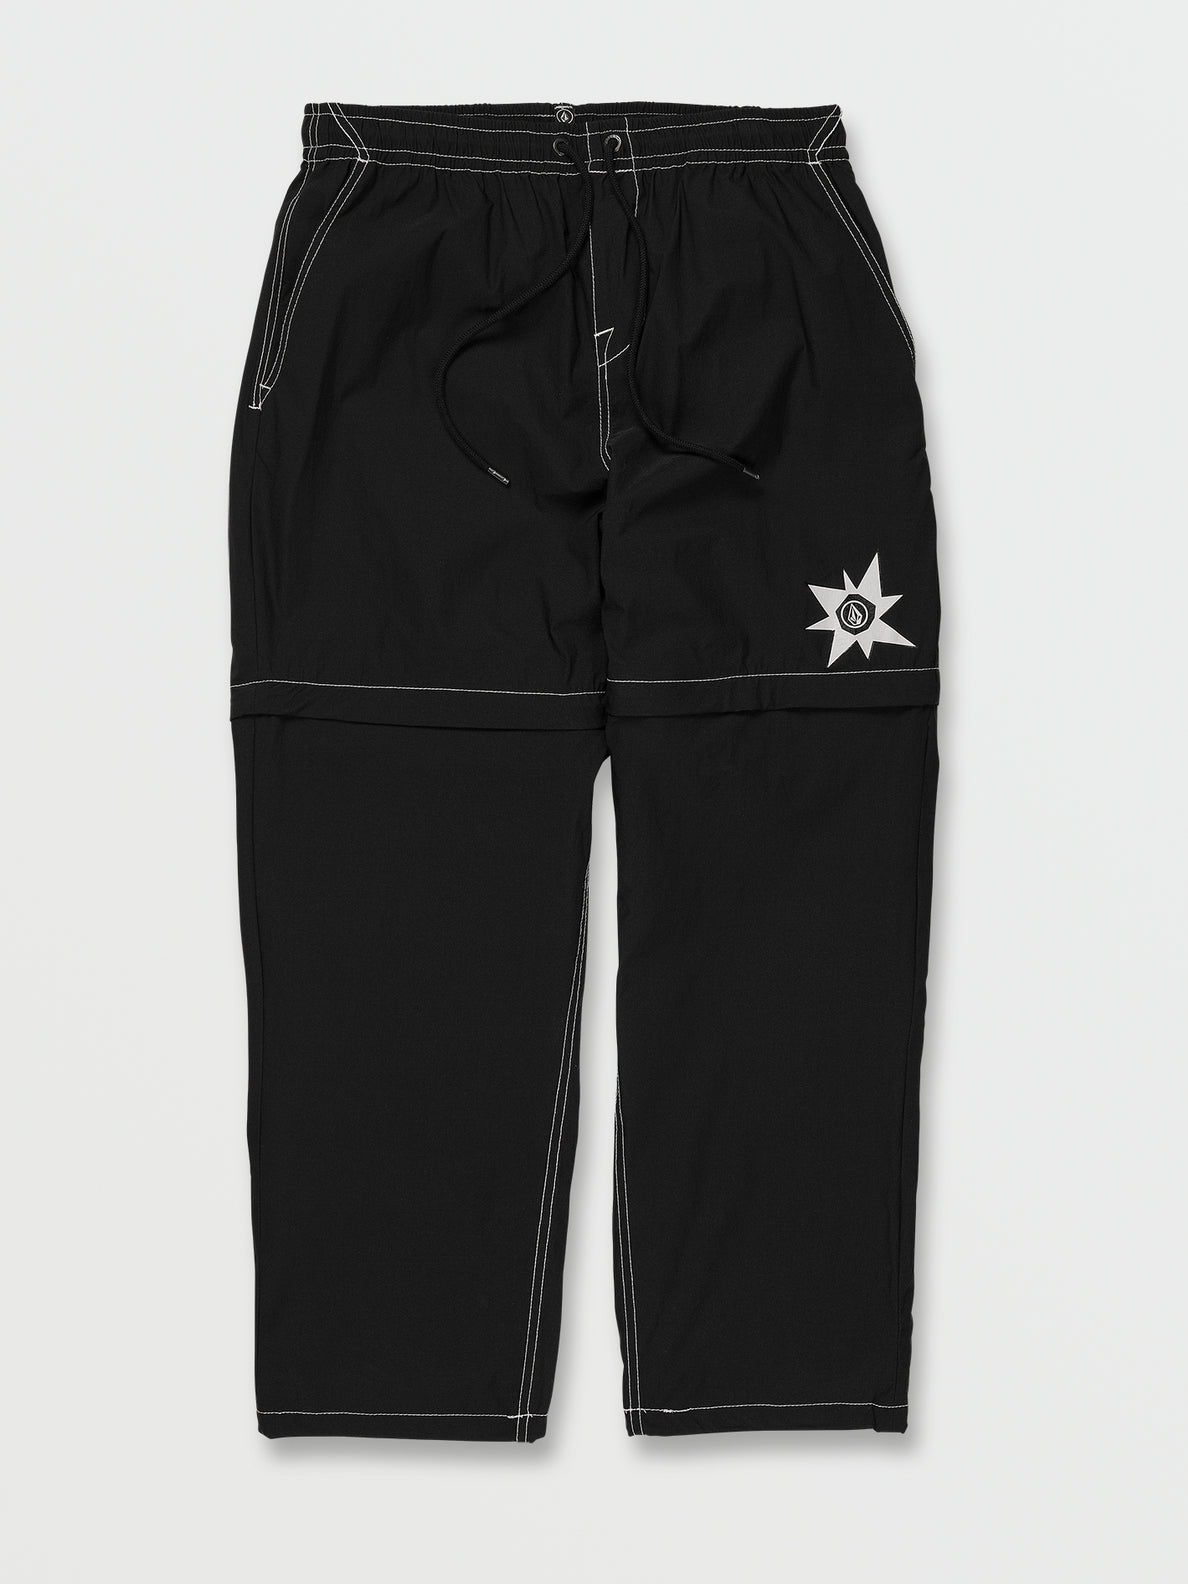 Tokyo True Convertible Elastic Waist Pants - Black (A1212302_BLK) [F]